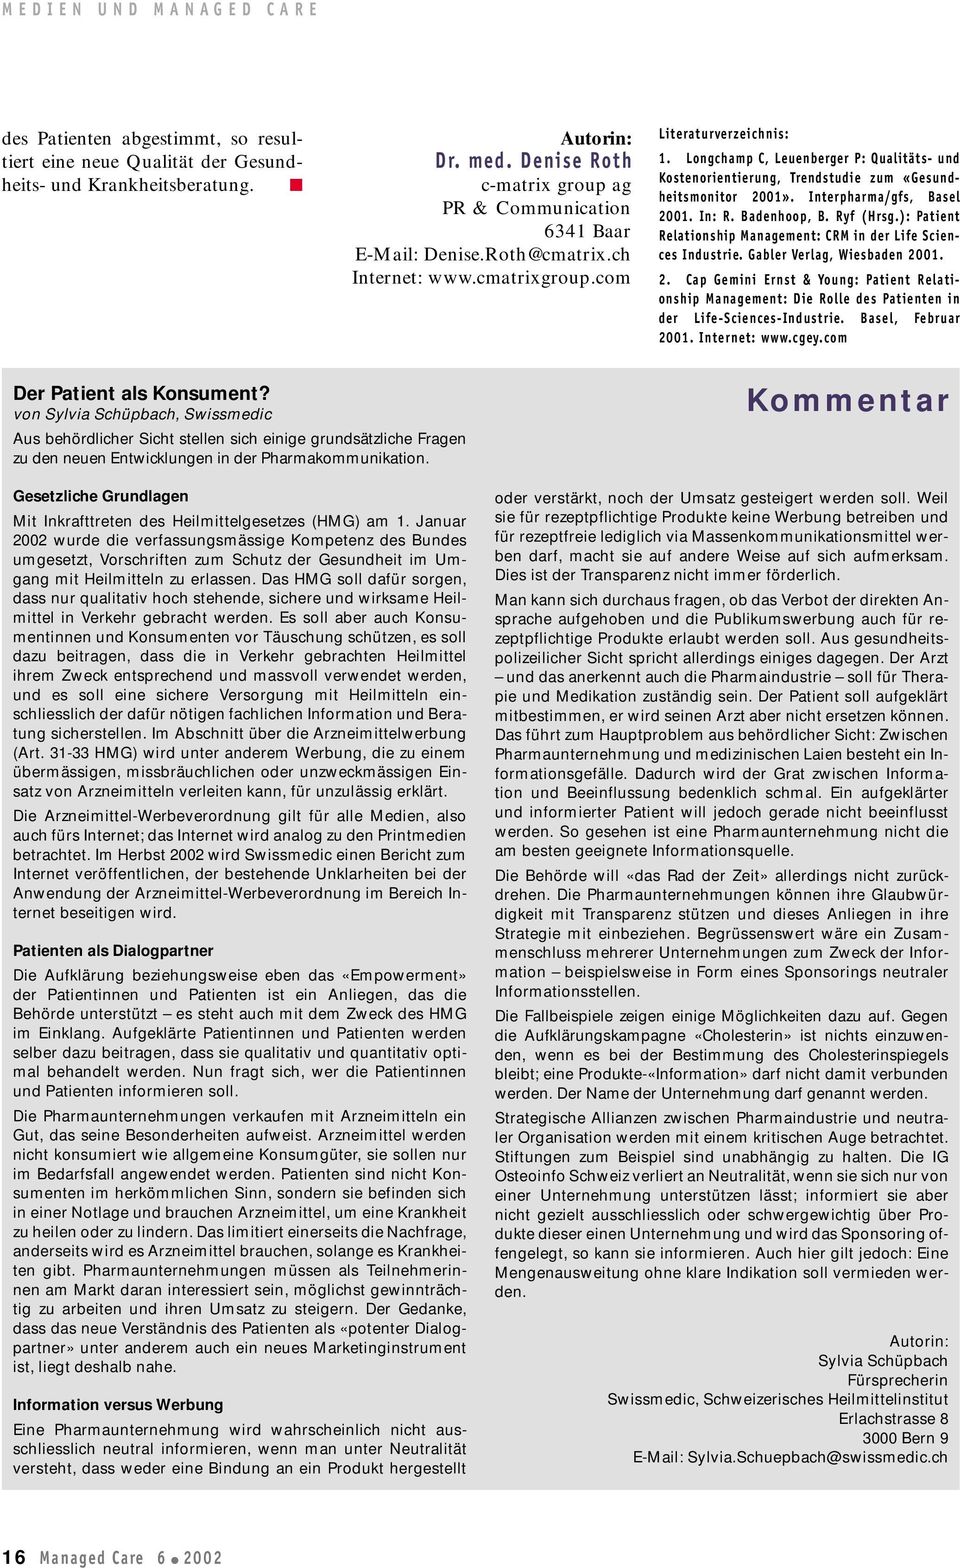 Longchamp C, Leuenberger P: Qualitäts- und Kostenorientierung, Trendstudie zum «Gesundheitsmonitor 2001». Interpharma/gfs, Basel 2001. In: R. Badenhoop, B. Ryf (Hrsg.